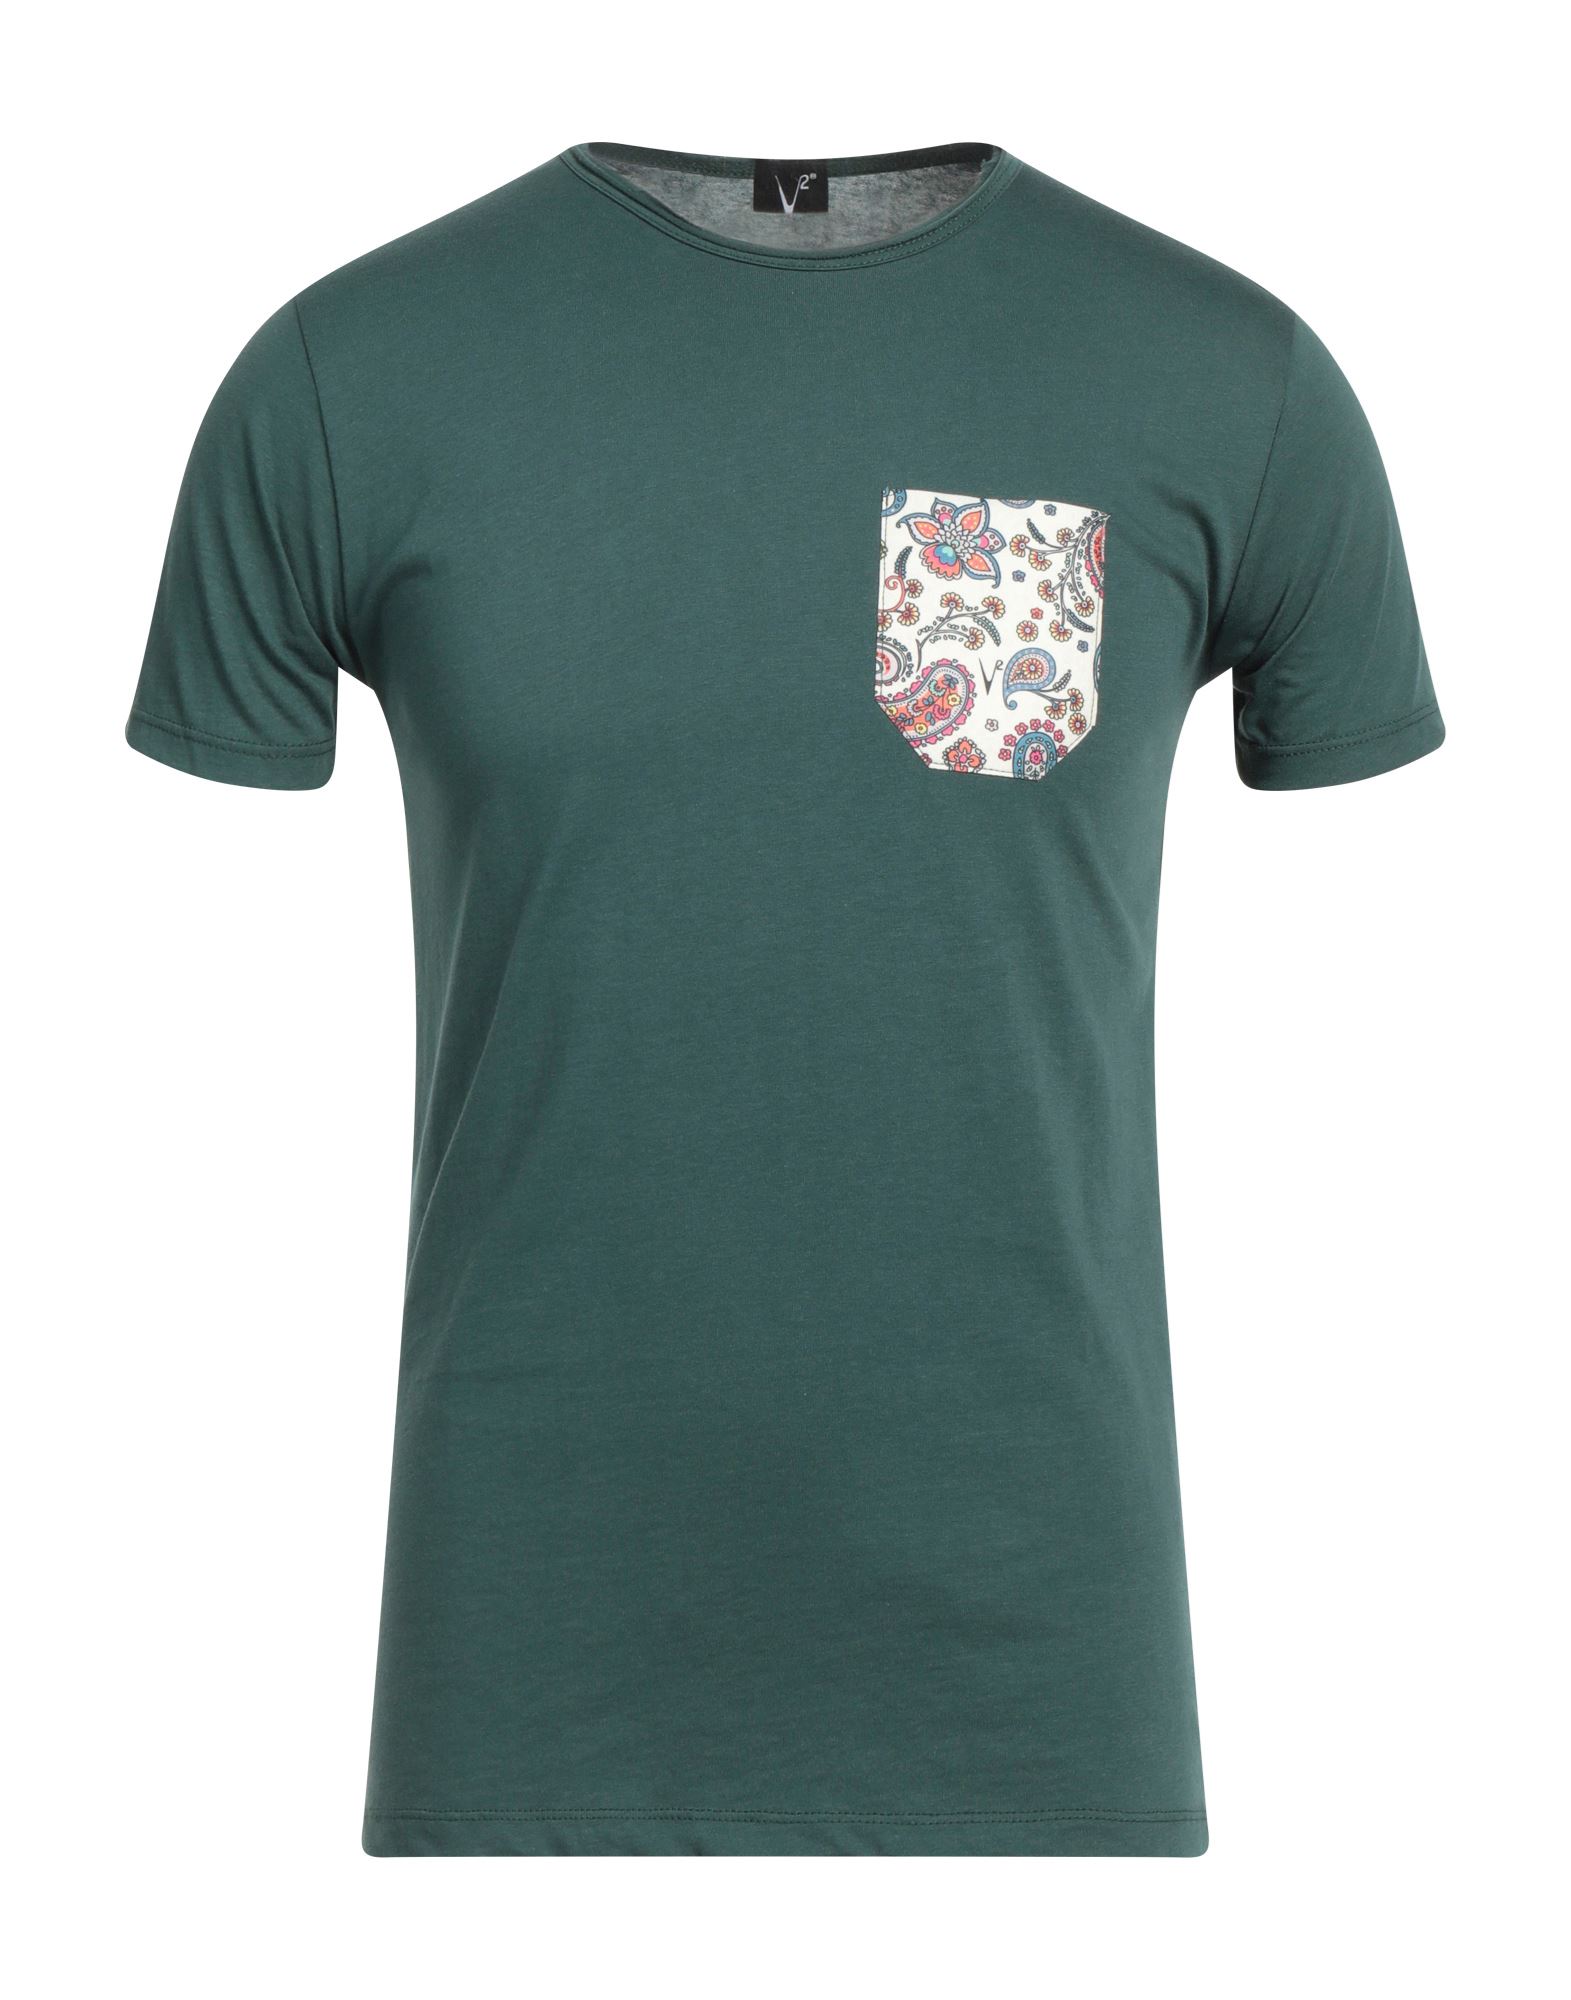 V2® Brand T-shirts In Dark Green